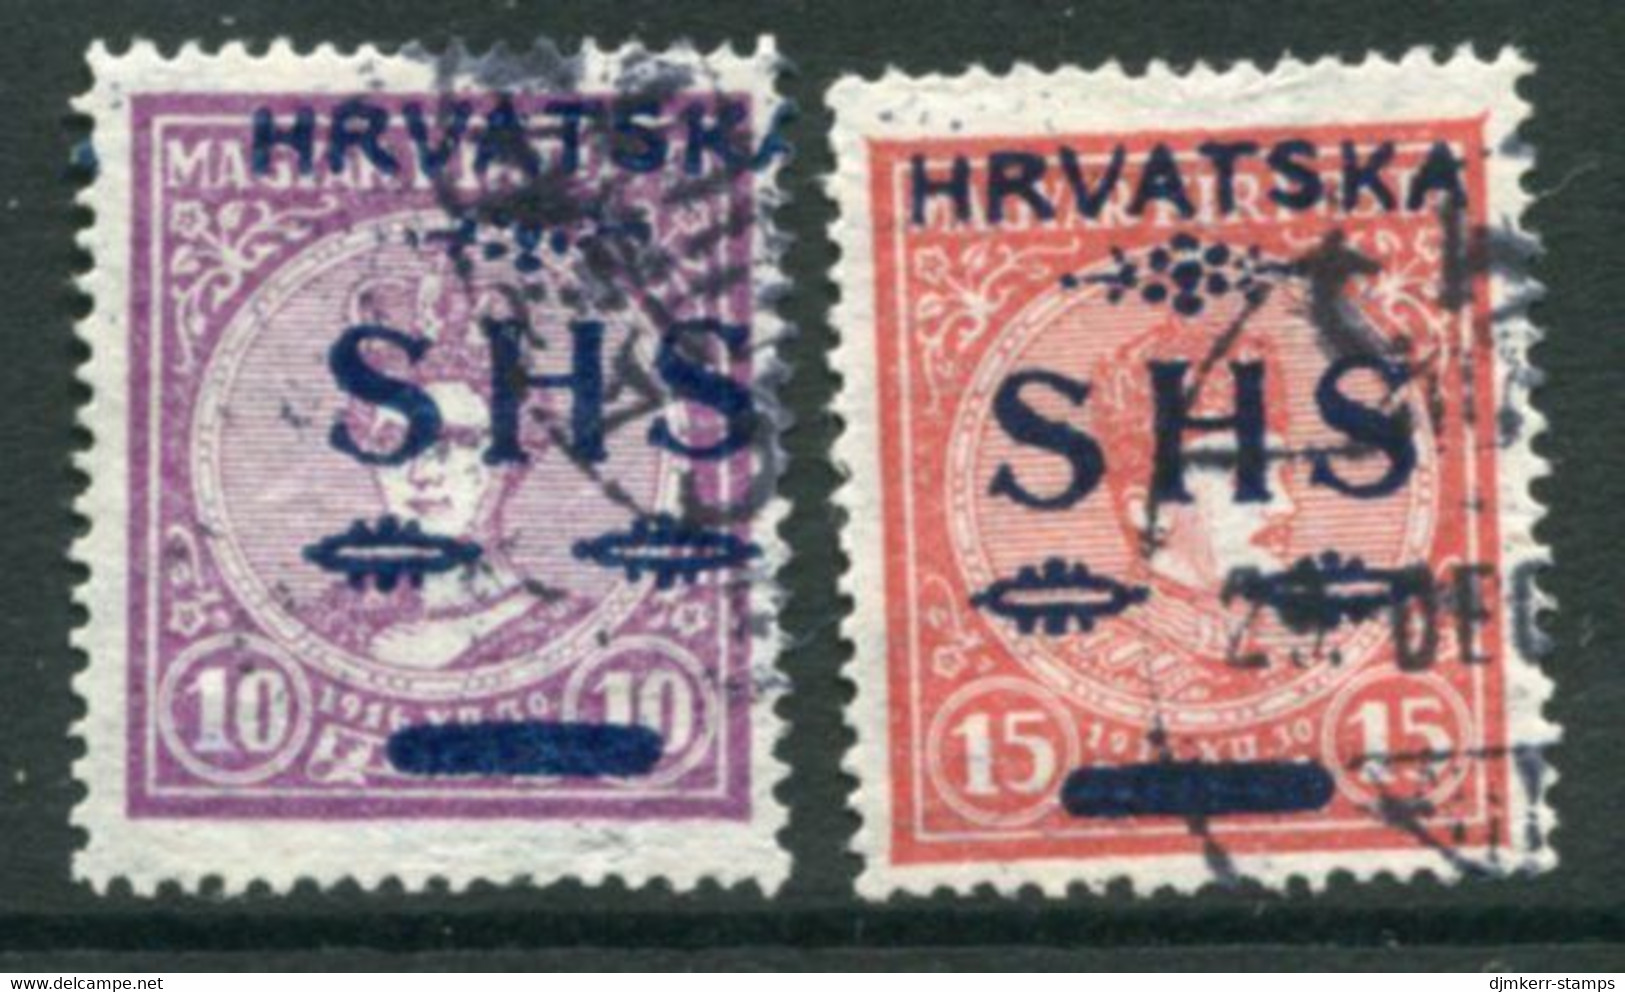 YUGOSLAVIA 1918 SHS Hrvatska Overprint On Hungary  Coronation Set Of 2 Used.   Michel 64-65 - Usados